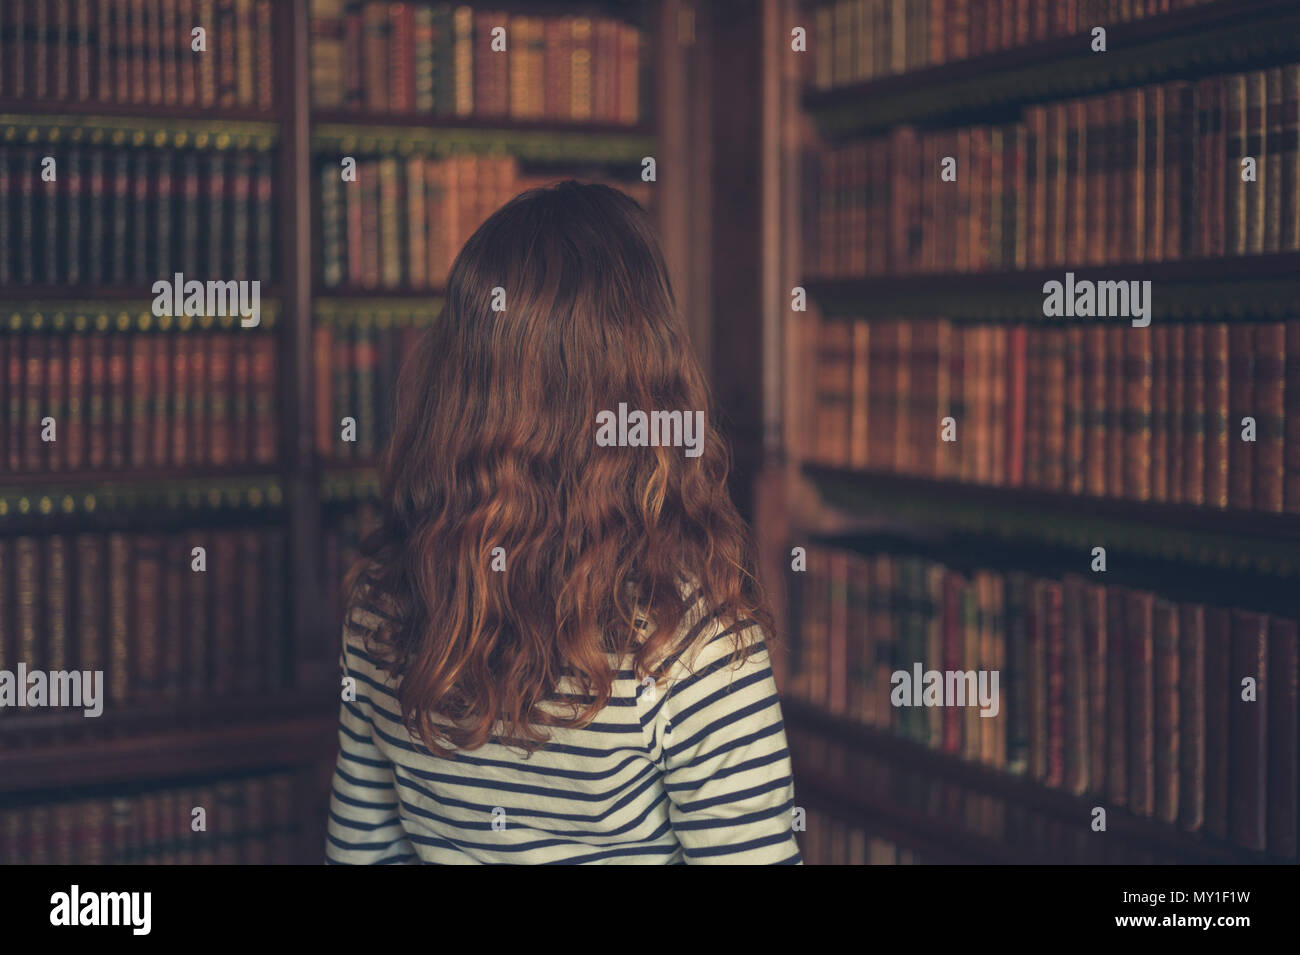 Eine junge Frau schaut sich die Bücher auf den Regalen in eine alte Bibliothek Stockfoto